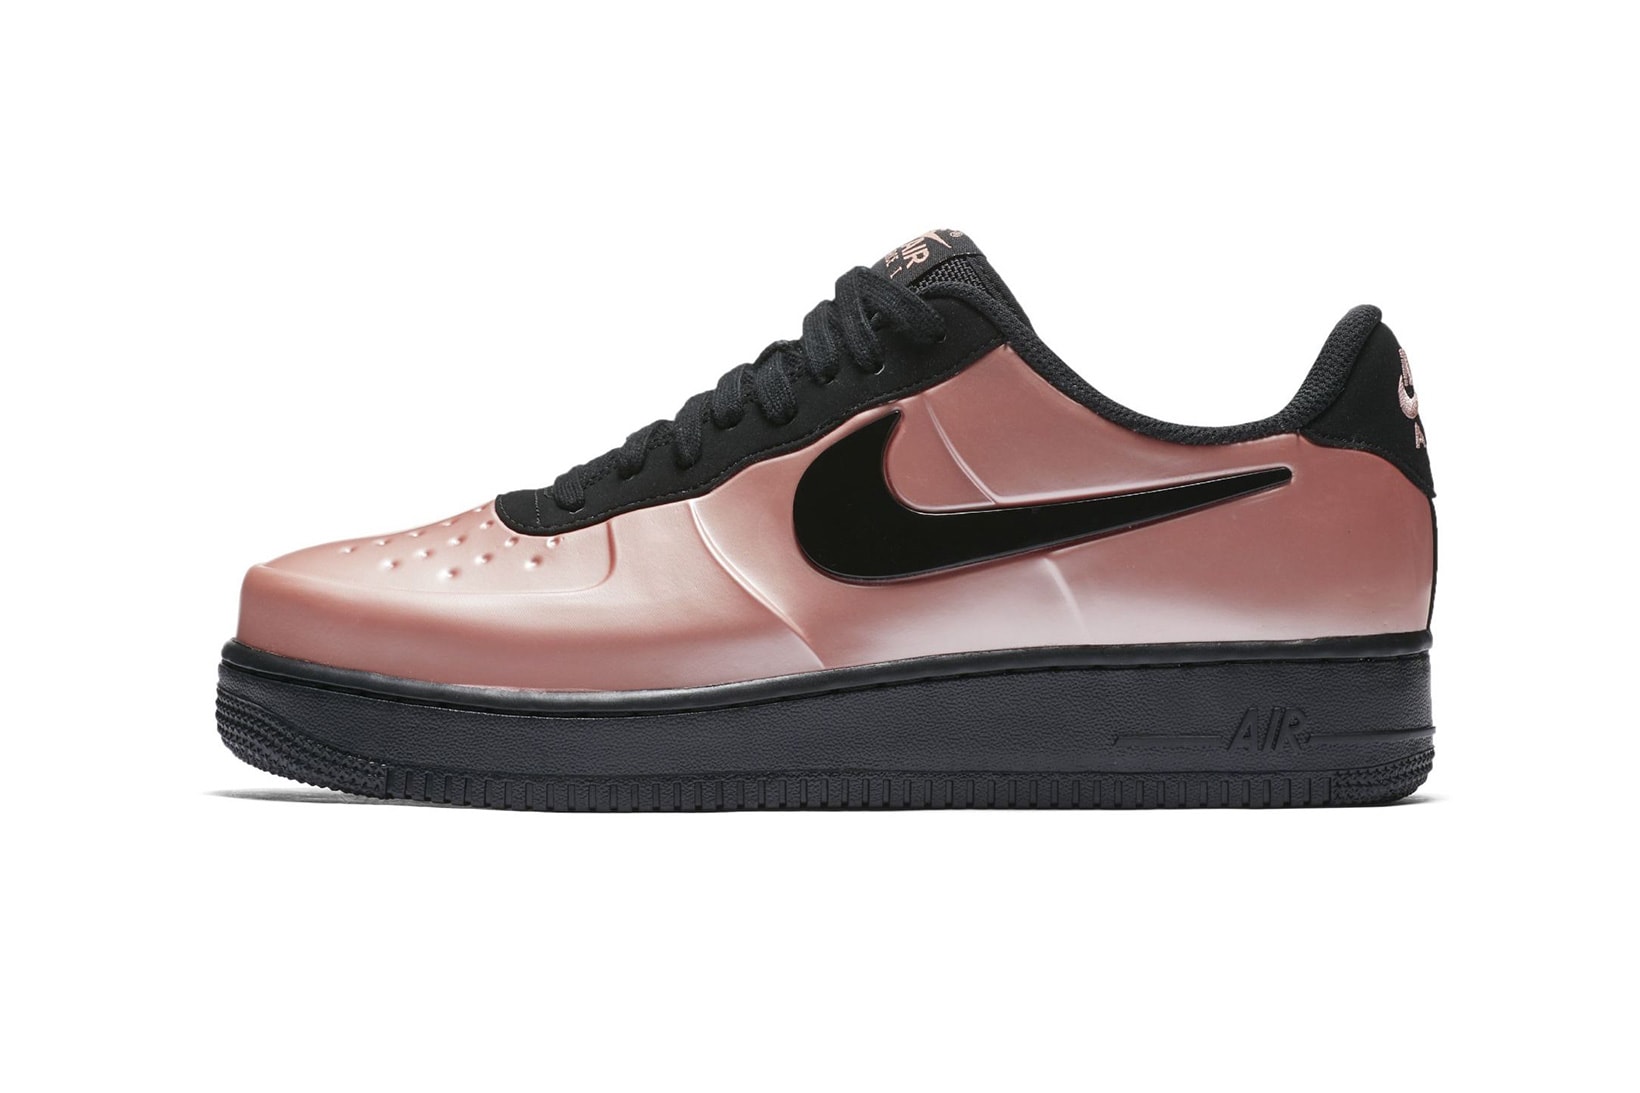 Nike Air Force 1 Foamposite Metallic Pink black footwear 2018 Nike Air Foamposite